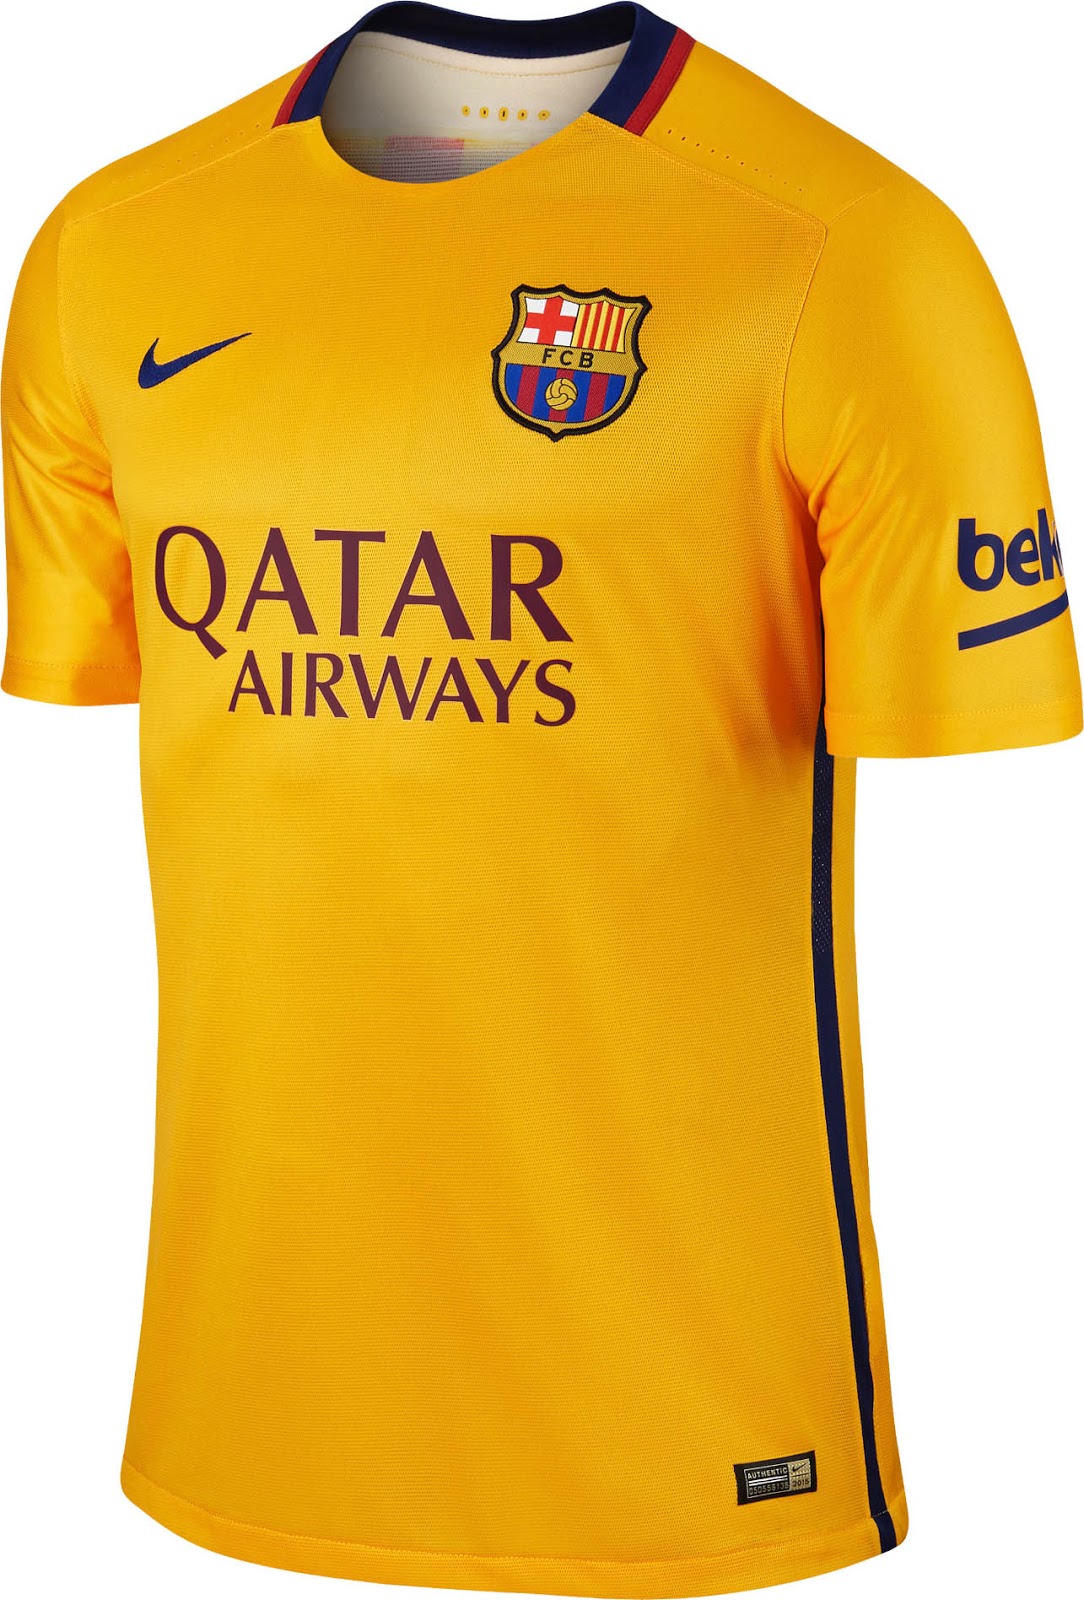 Populair Maak een naam Gespecificeerd Revolutionary FC Barcelona 15-16 Kits Released - Footy Headlines